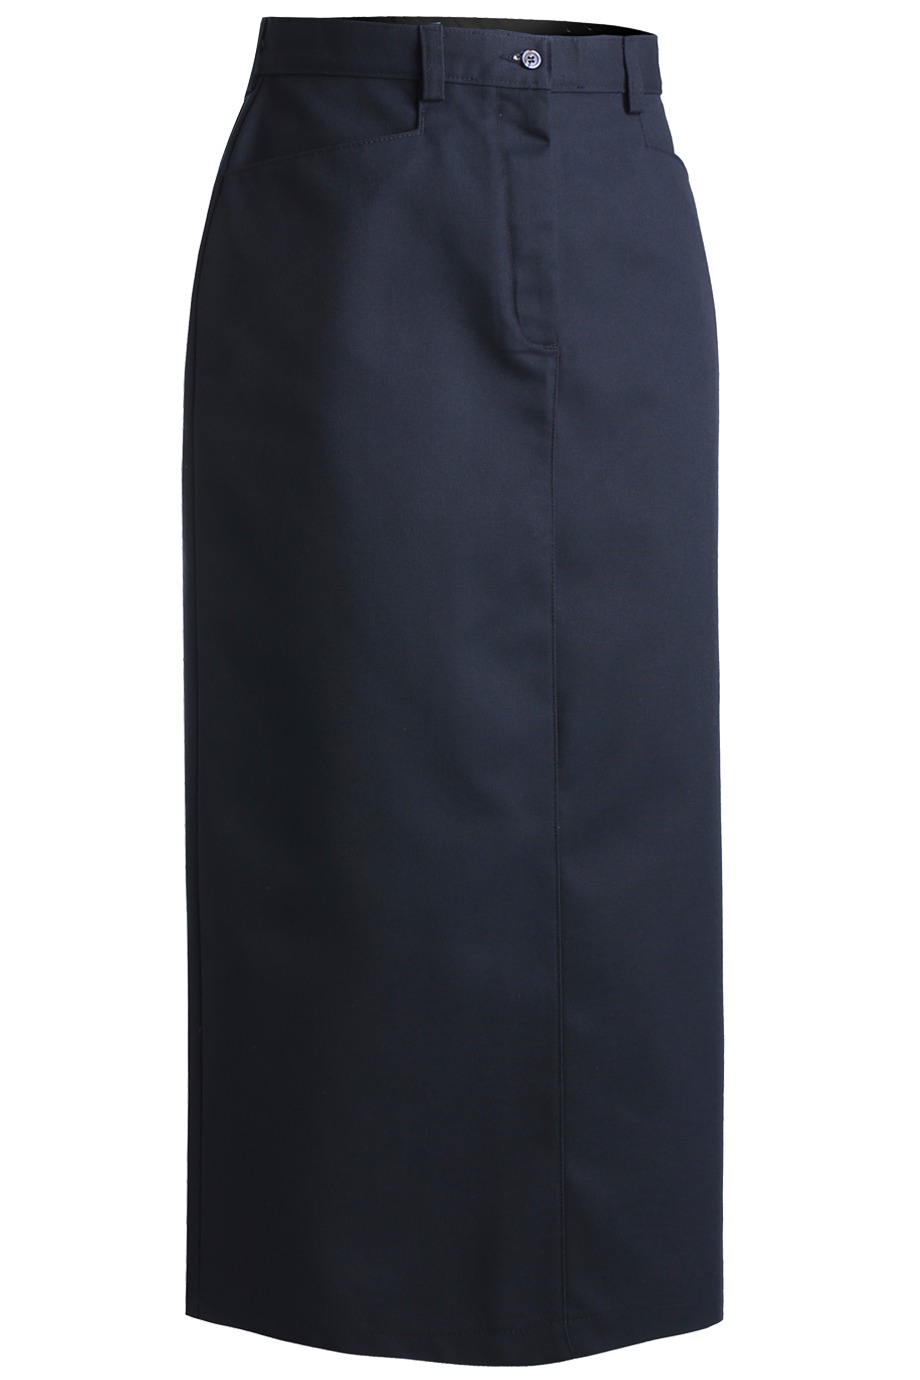 Edwards Garment 9779 - Women's Chino Skirt